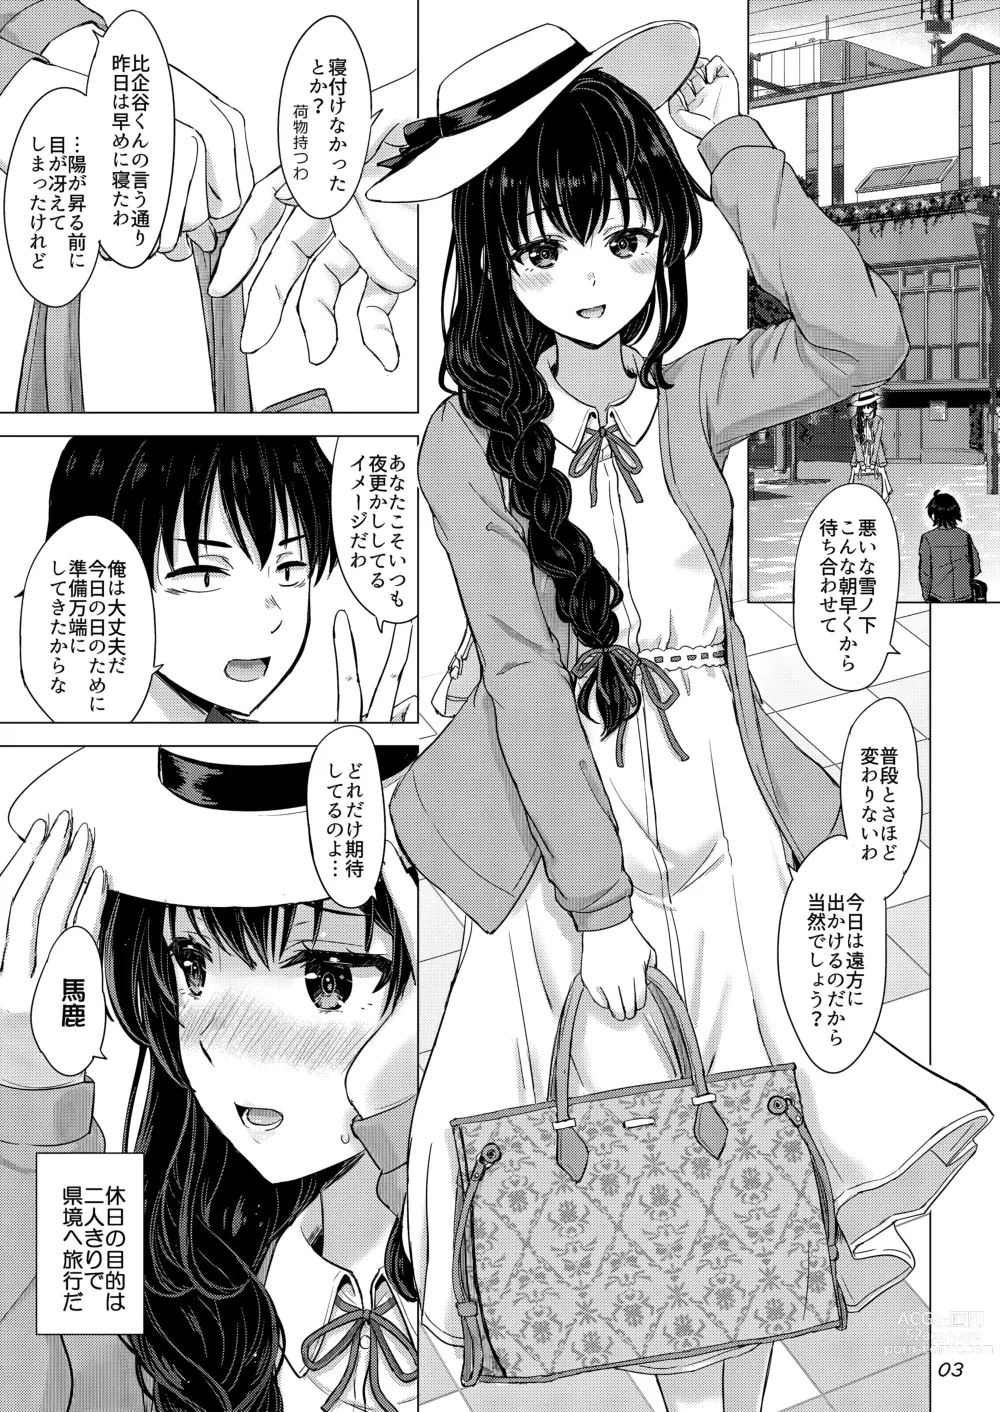 Page 2 of doujinshi Yukinoshita Shimai to Iyarashii Futari no Himegoto. - The Yukinoshita sisters each have sex with hachiman.